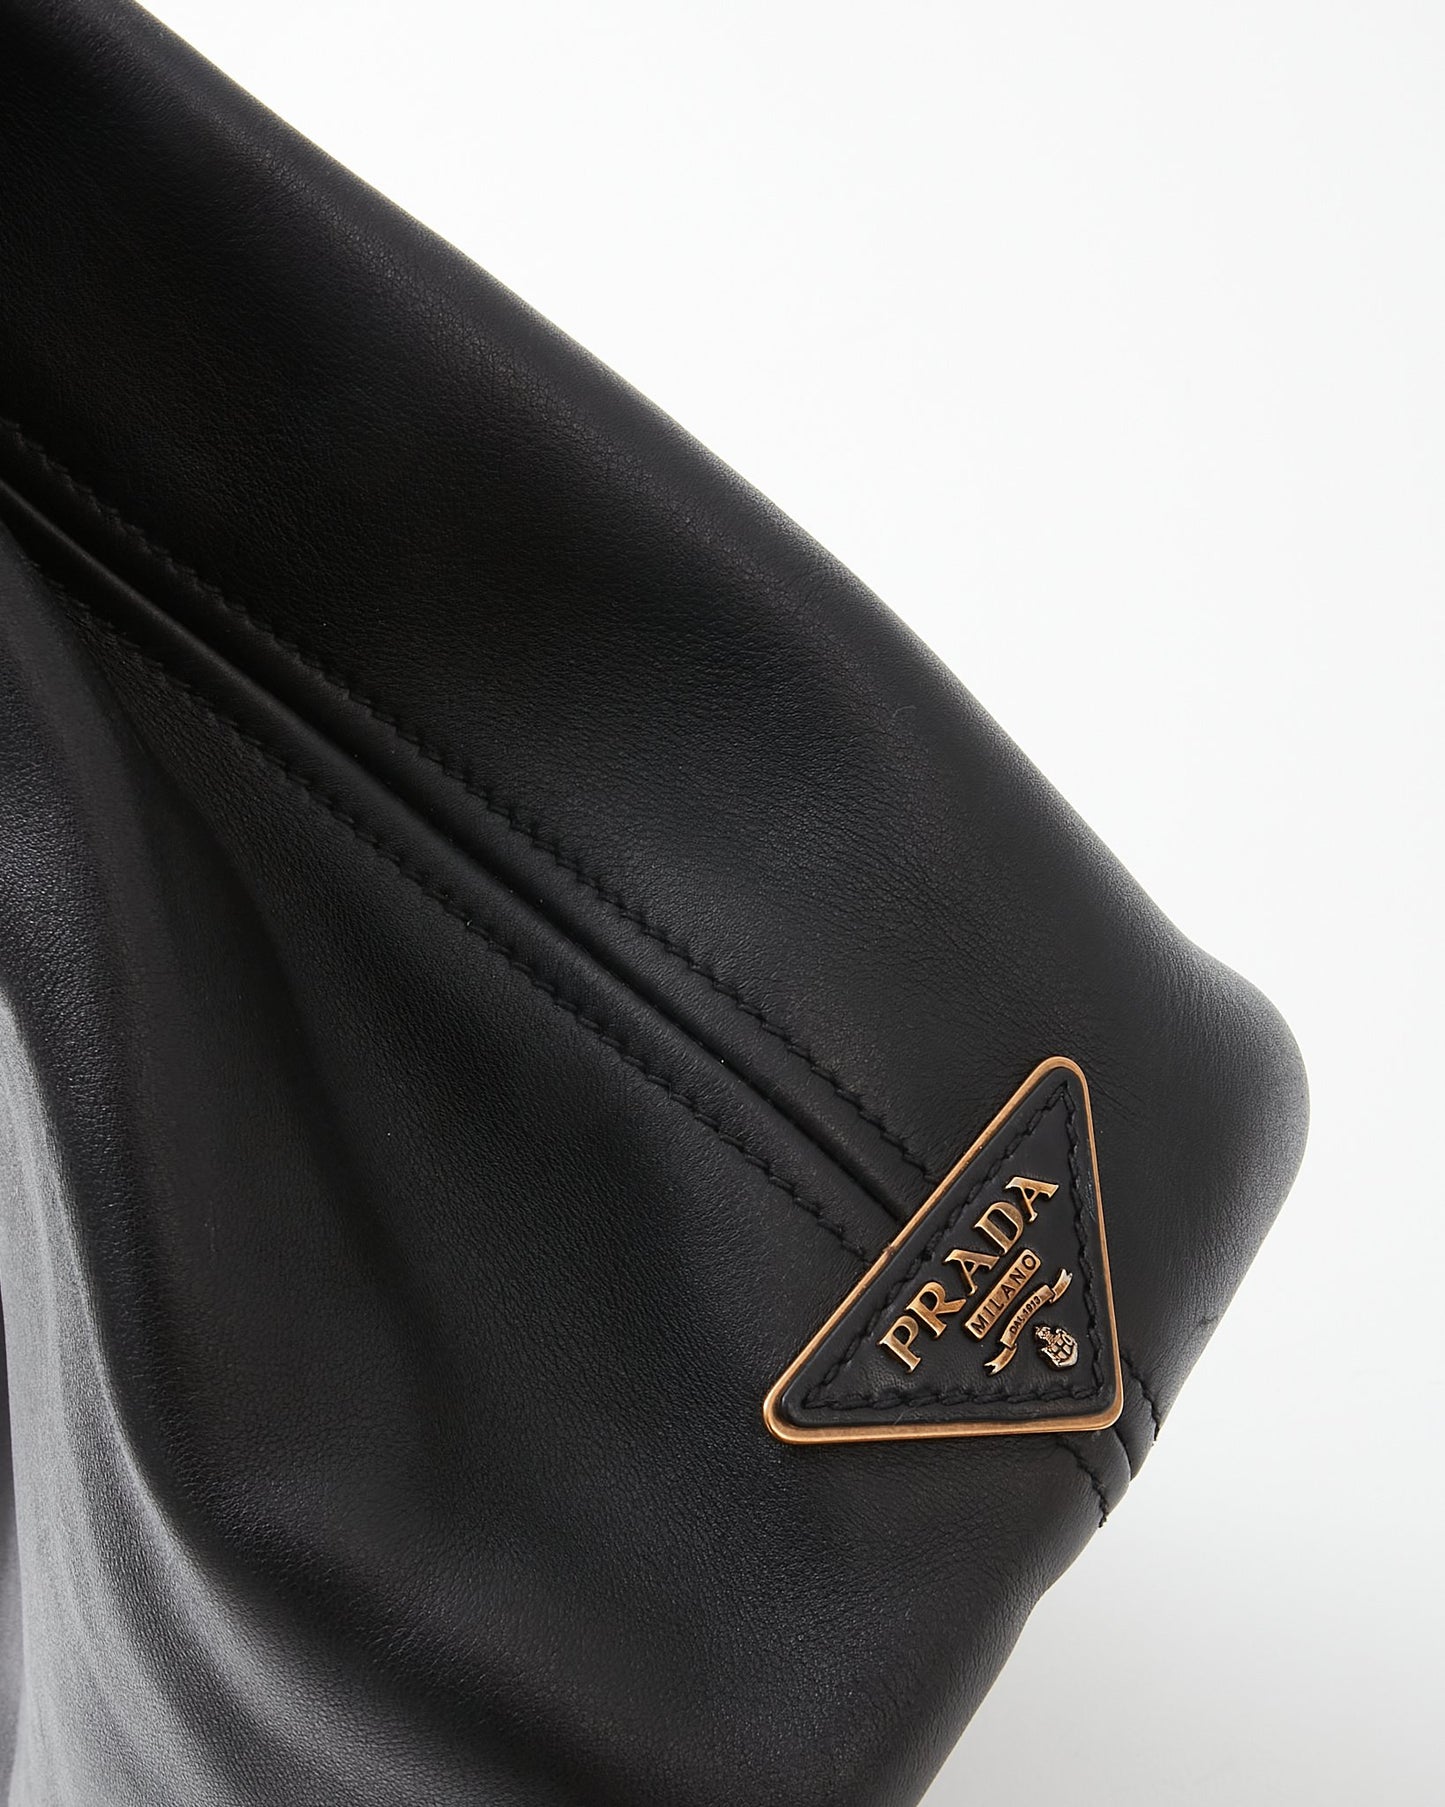 Prada Black Glace Calfskin Leather GHW Shoulder Bag